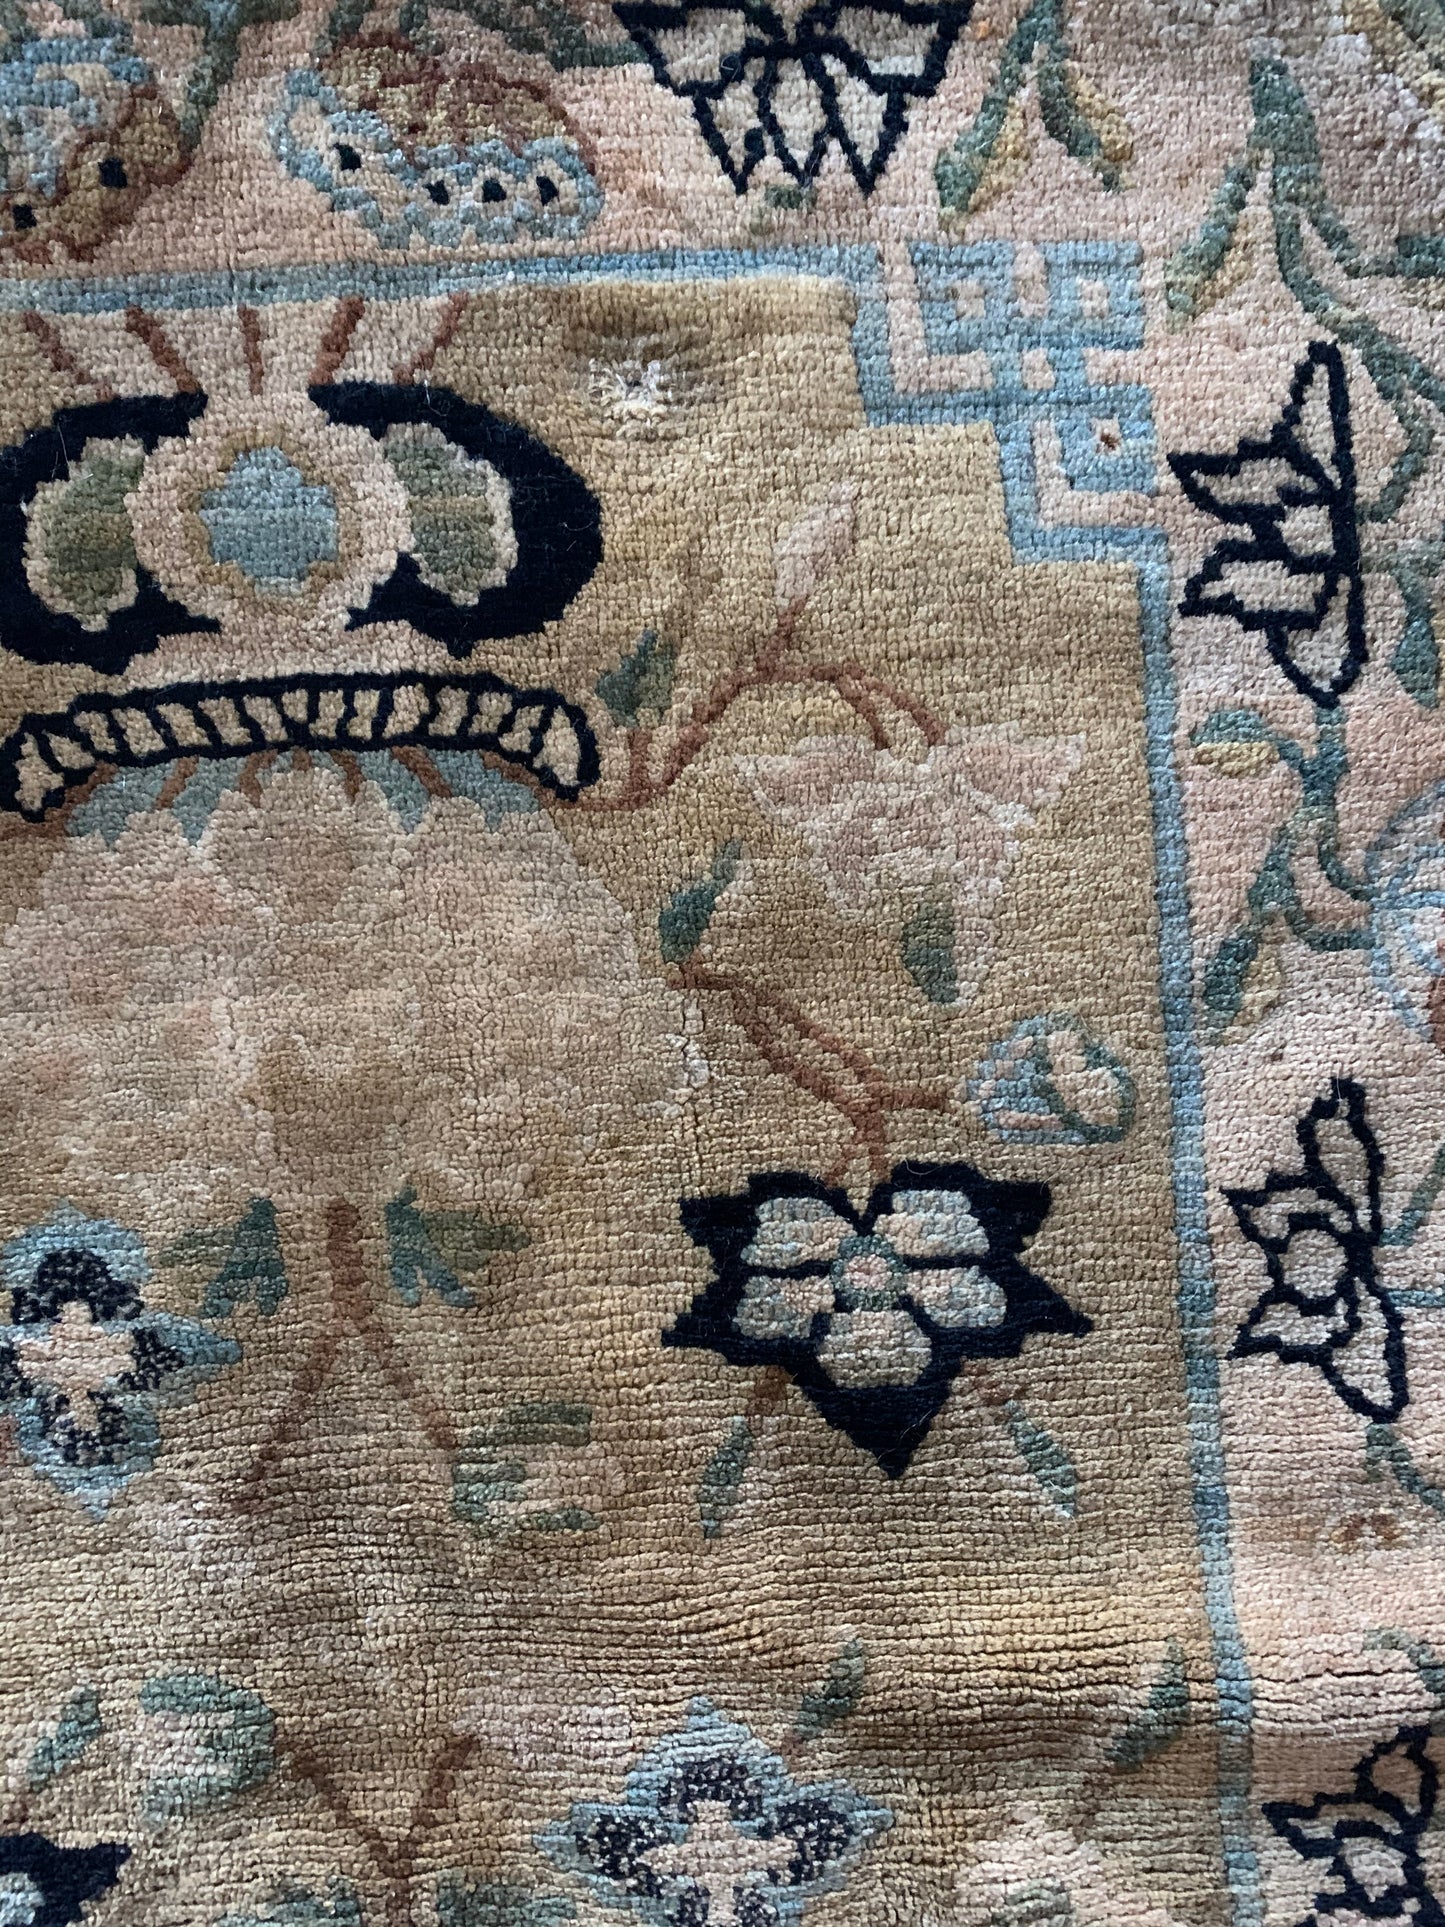 An antique Tibetan meditation rug